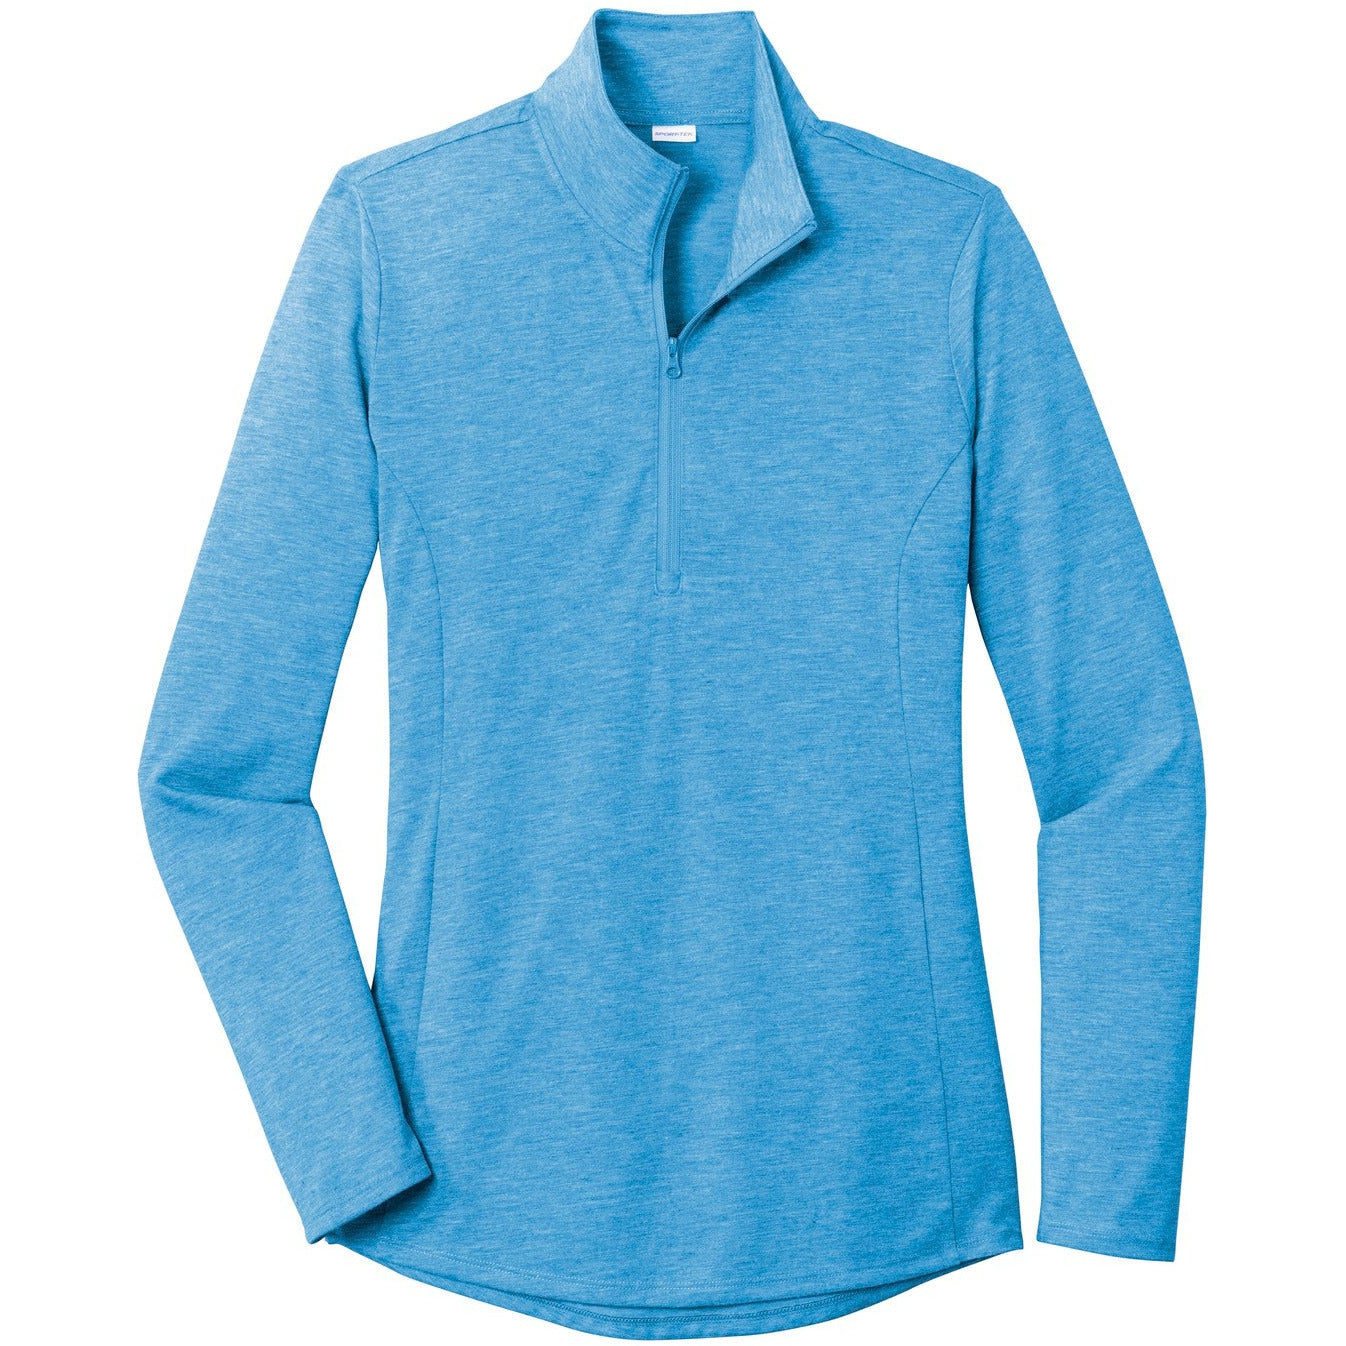 Sport-Tek ® Ladies PosiCharge ® Tri-Blend Wicking 1/4-Zip Pullover